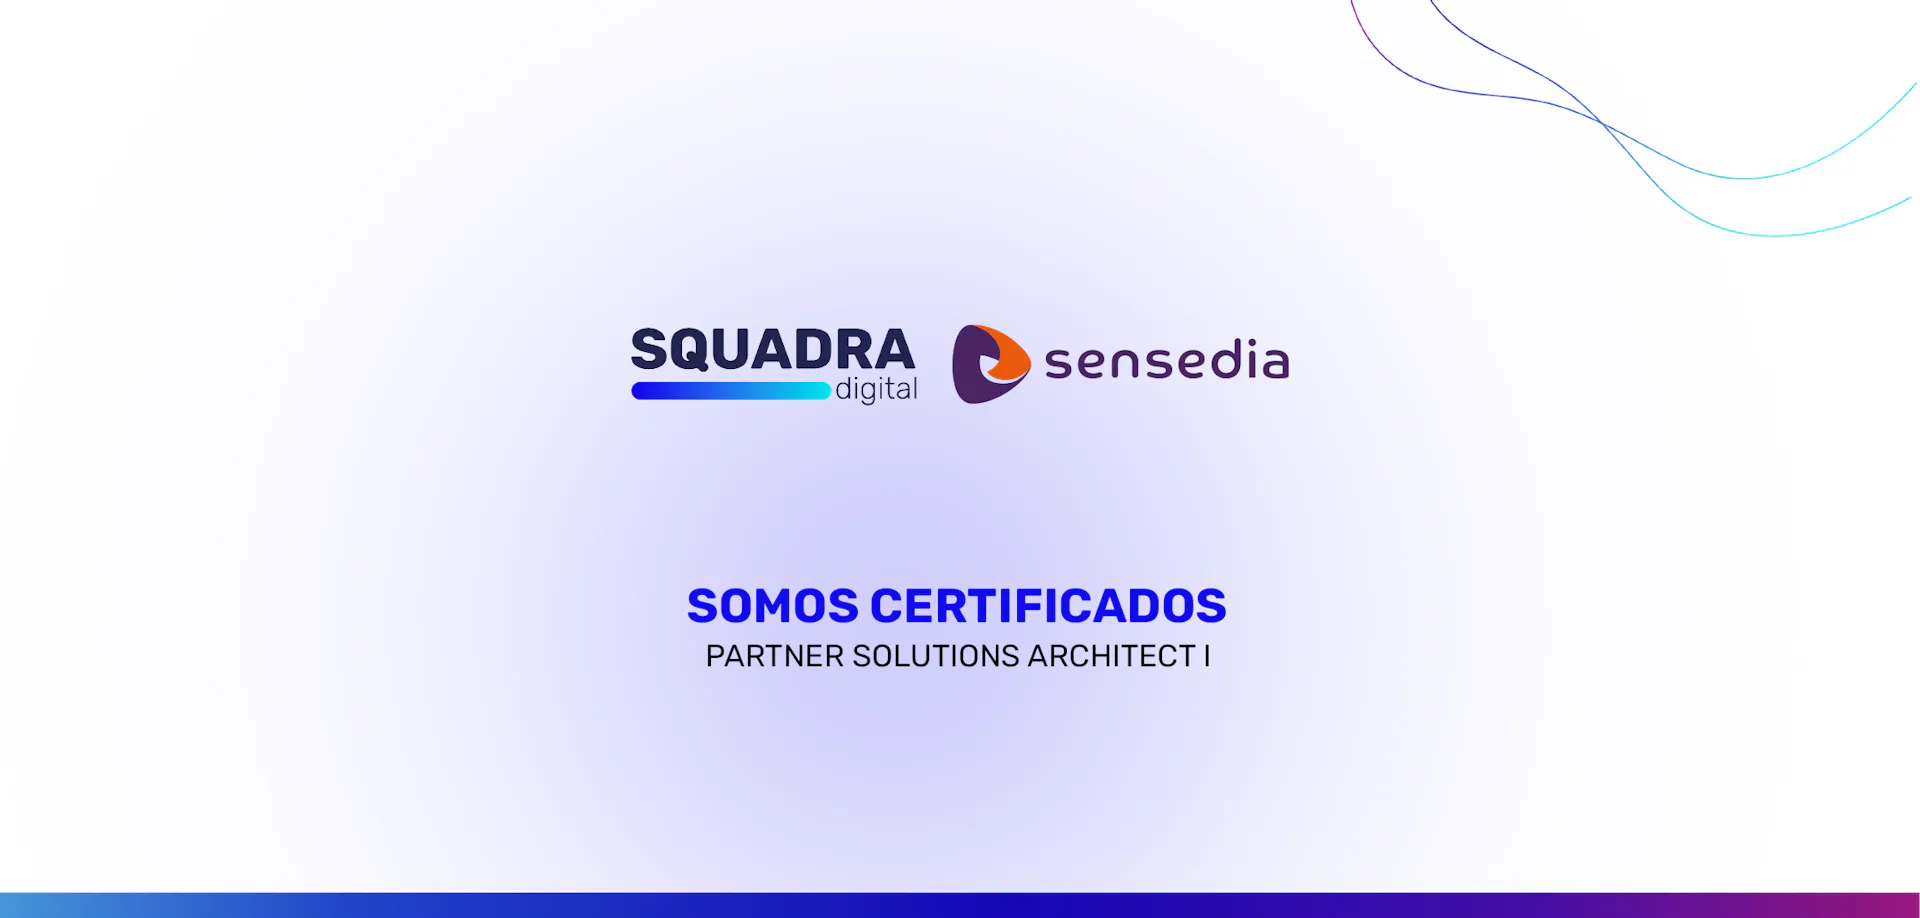 Imagem com um fundo branco, com o logo da SQUADRA e Sensedia centralizado, e abaixo os dizeres: SQUADRA é certificada em Partner Solutions Architect I pela SENSEDIA